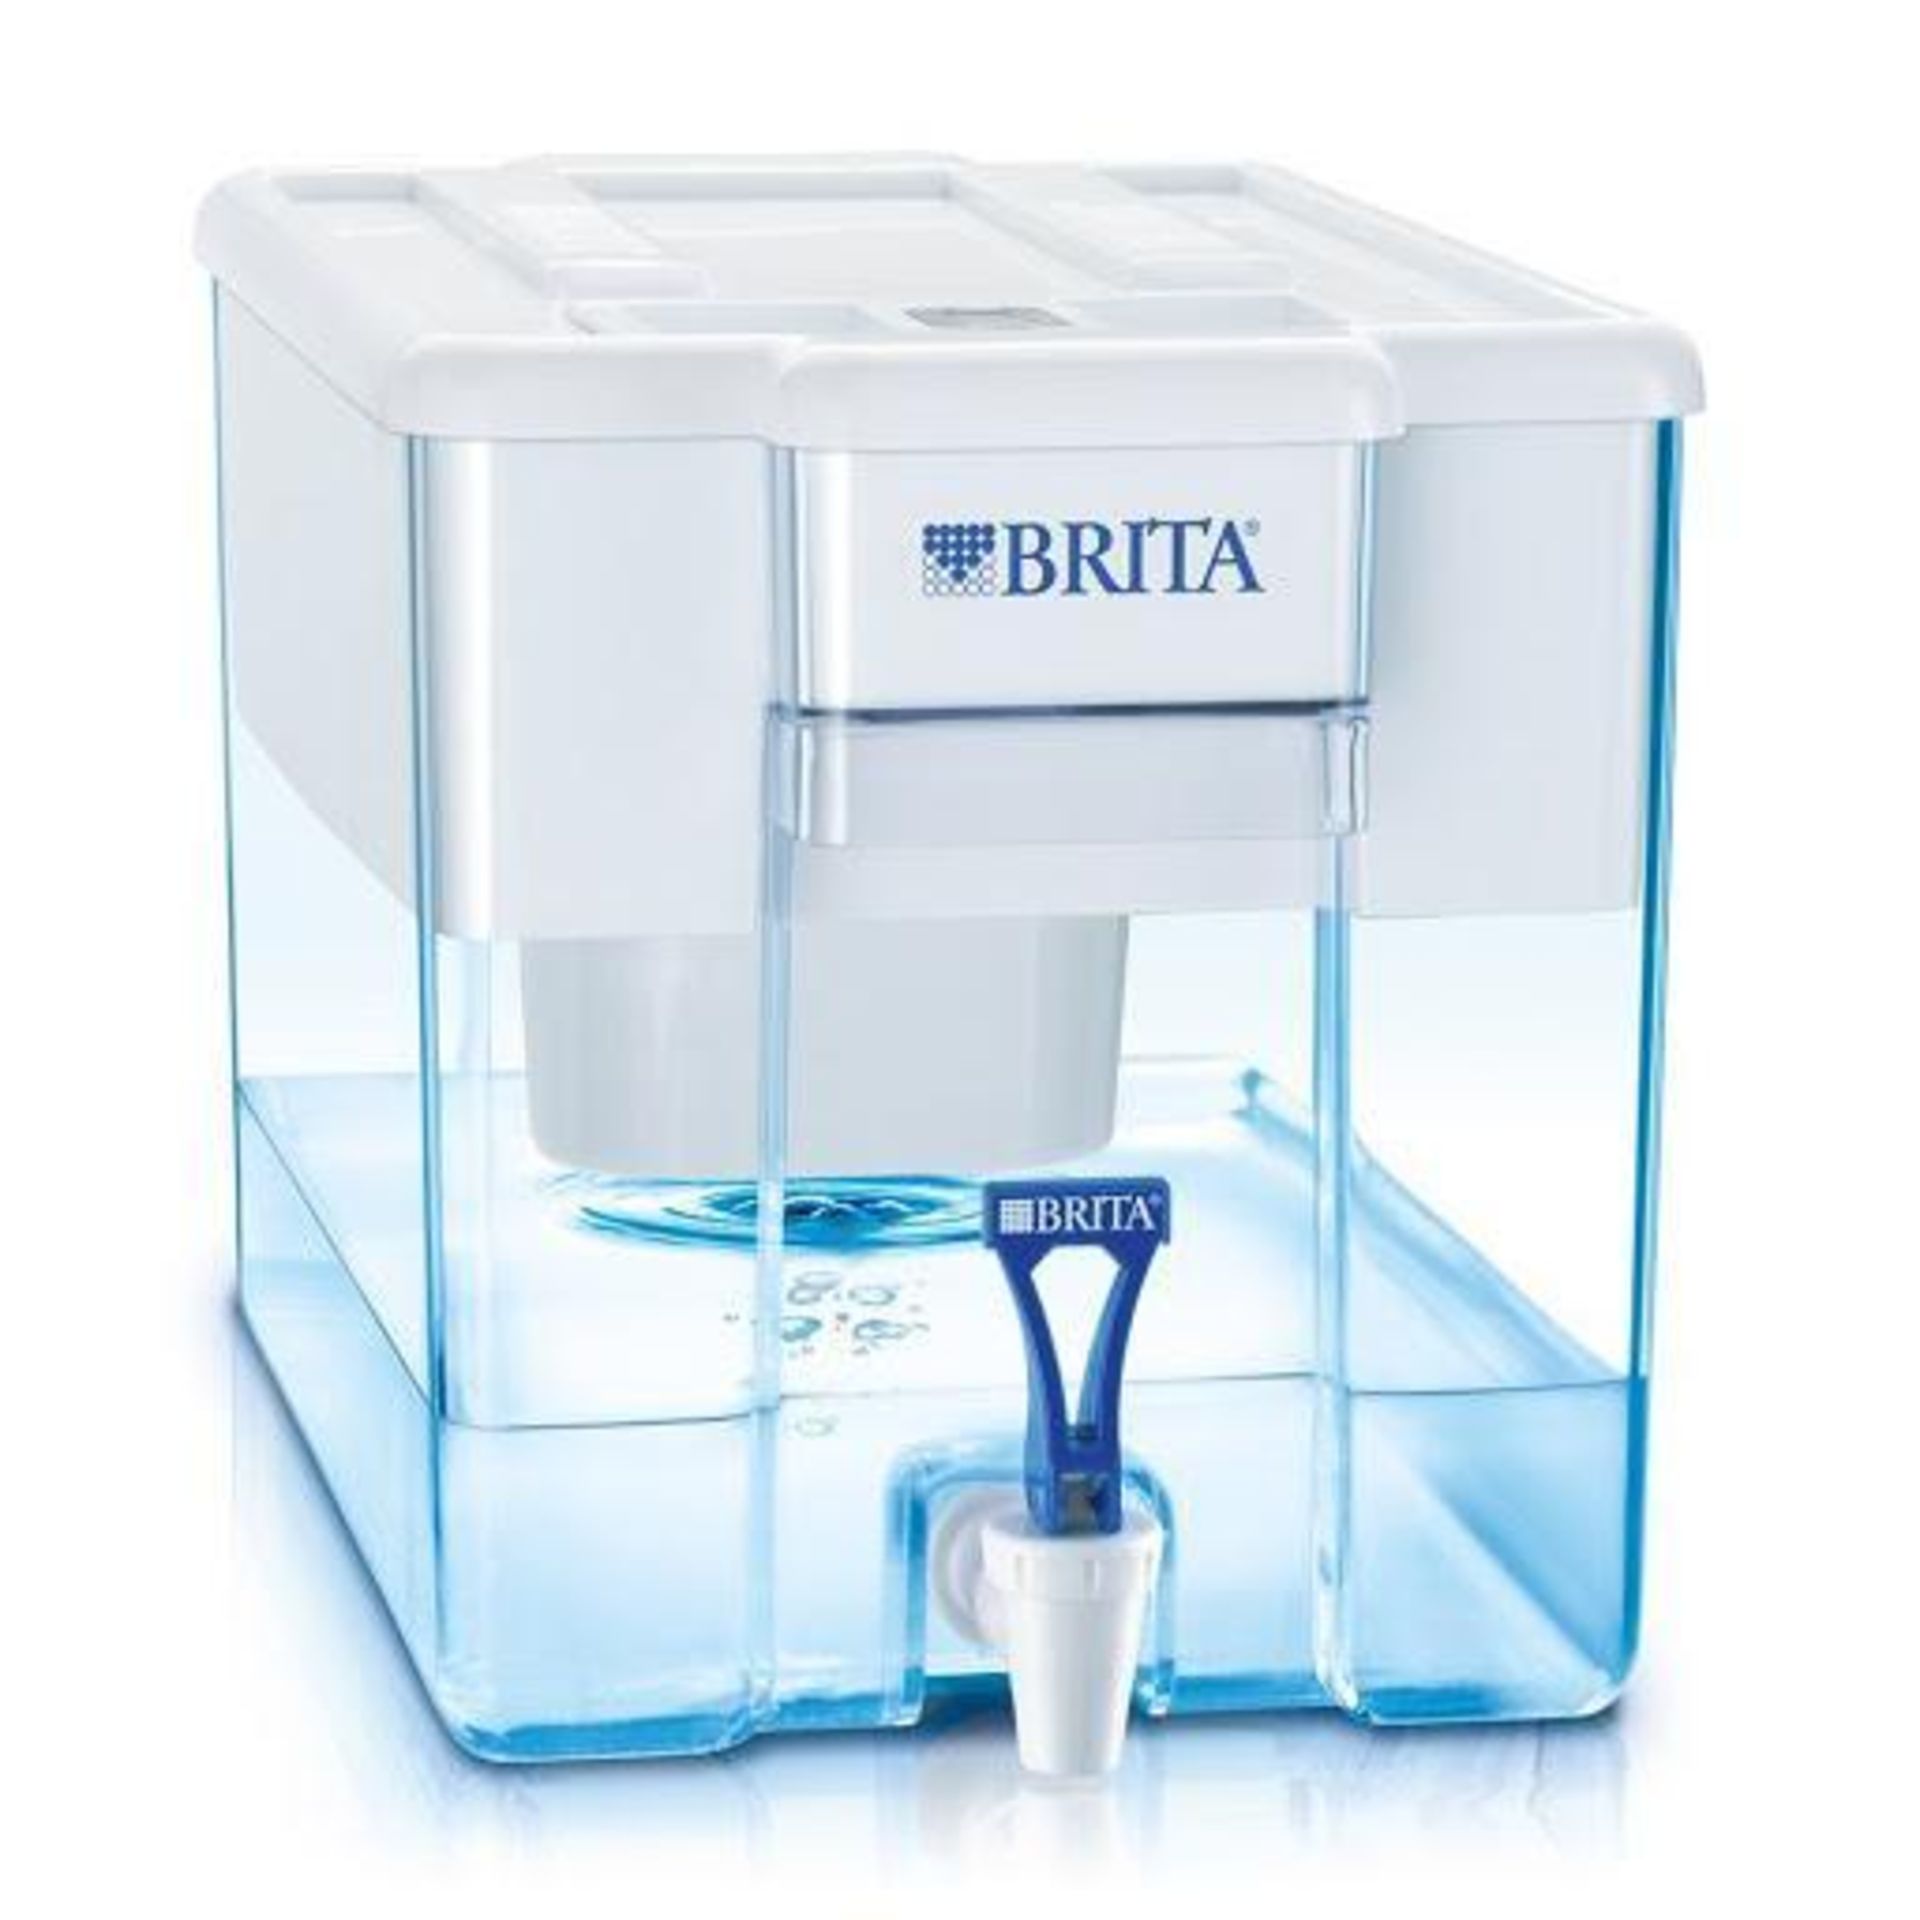 Brita Optimax Cool Water Filter